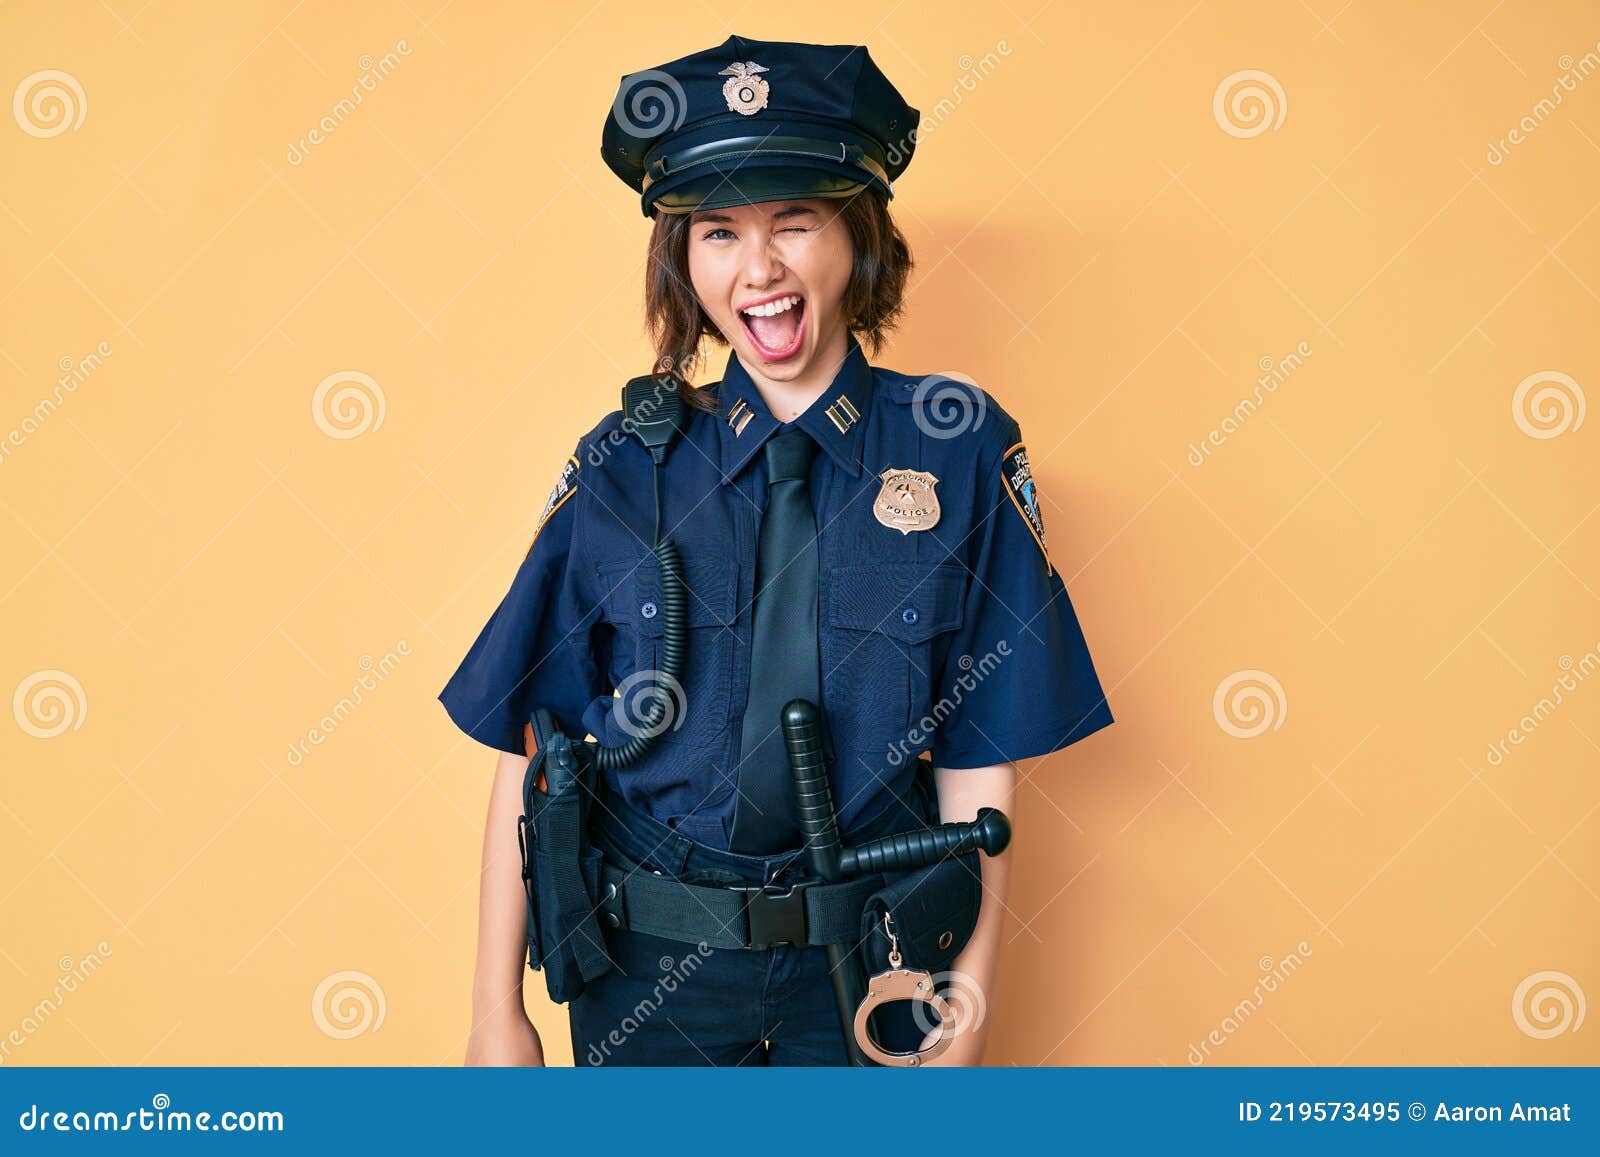 169 Sexy Frau Mit Polizeiuniform Fotos - Kostenlose und Royalty-Free  Stock-Fotos von Dreamstime